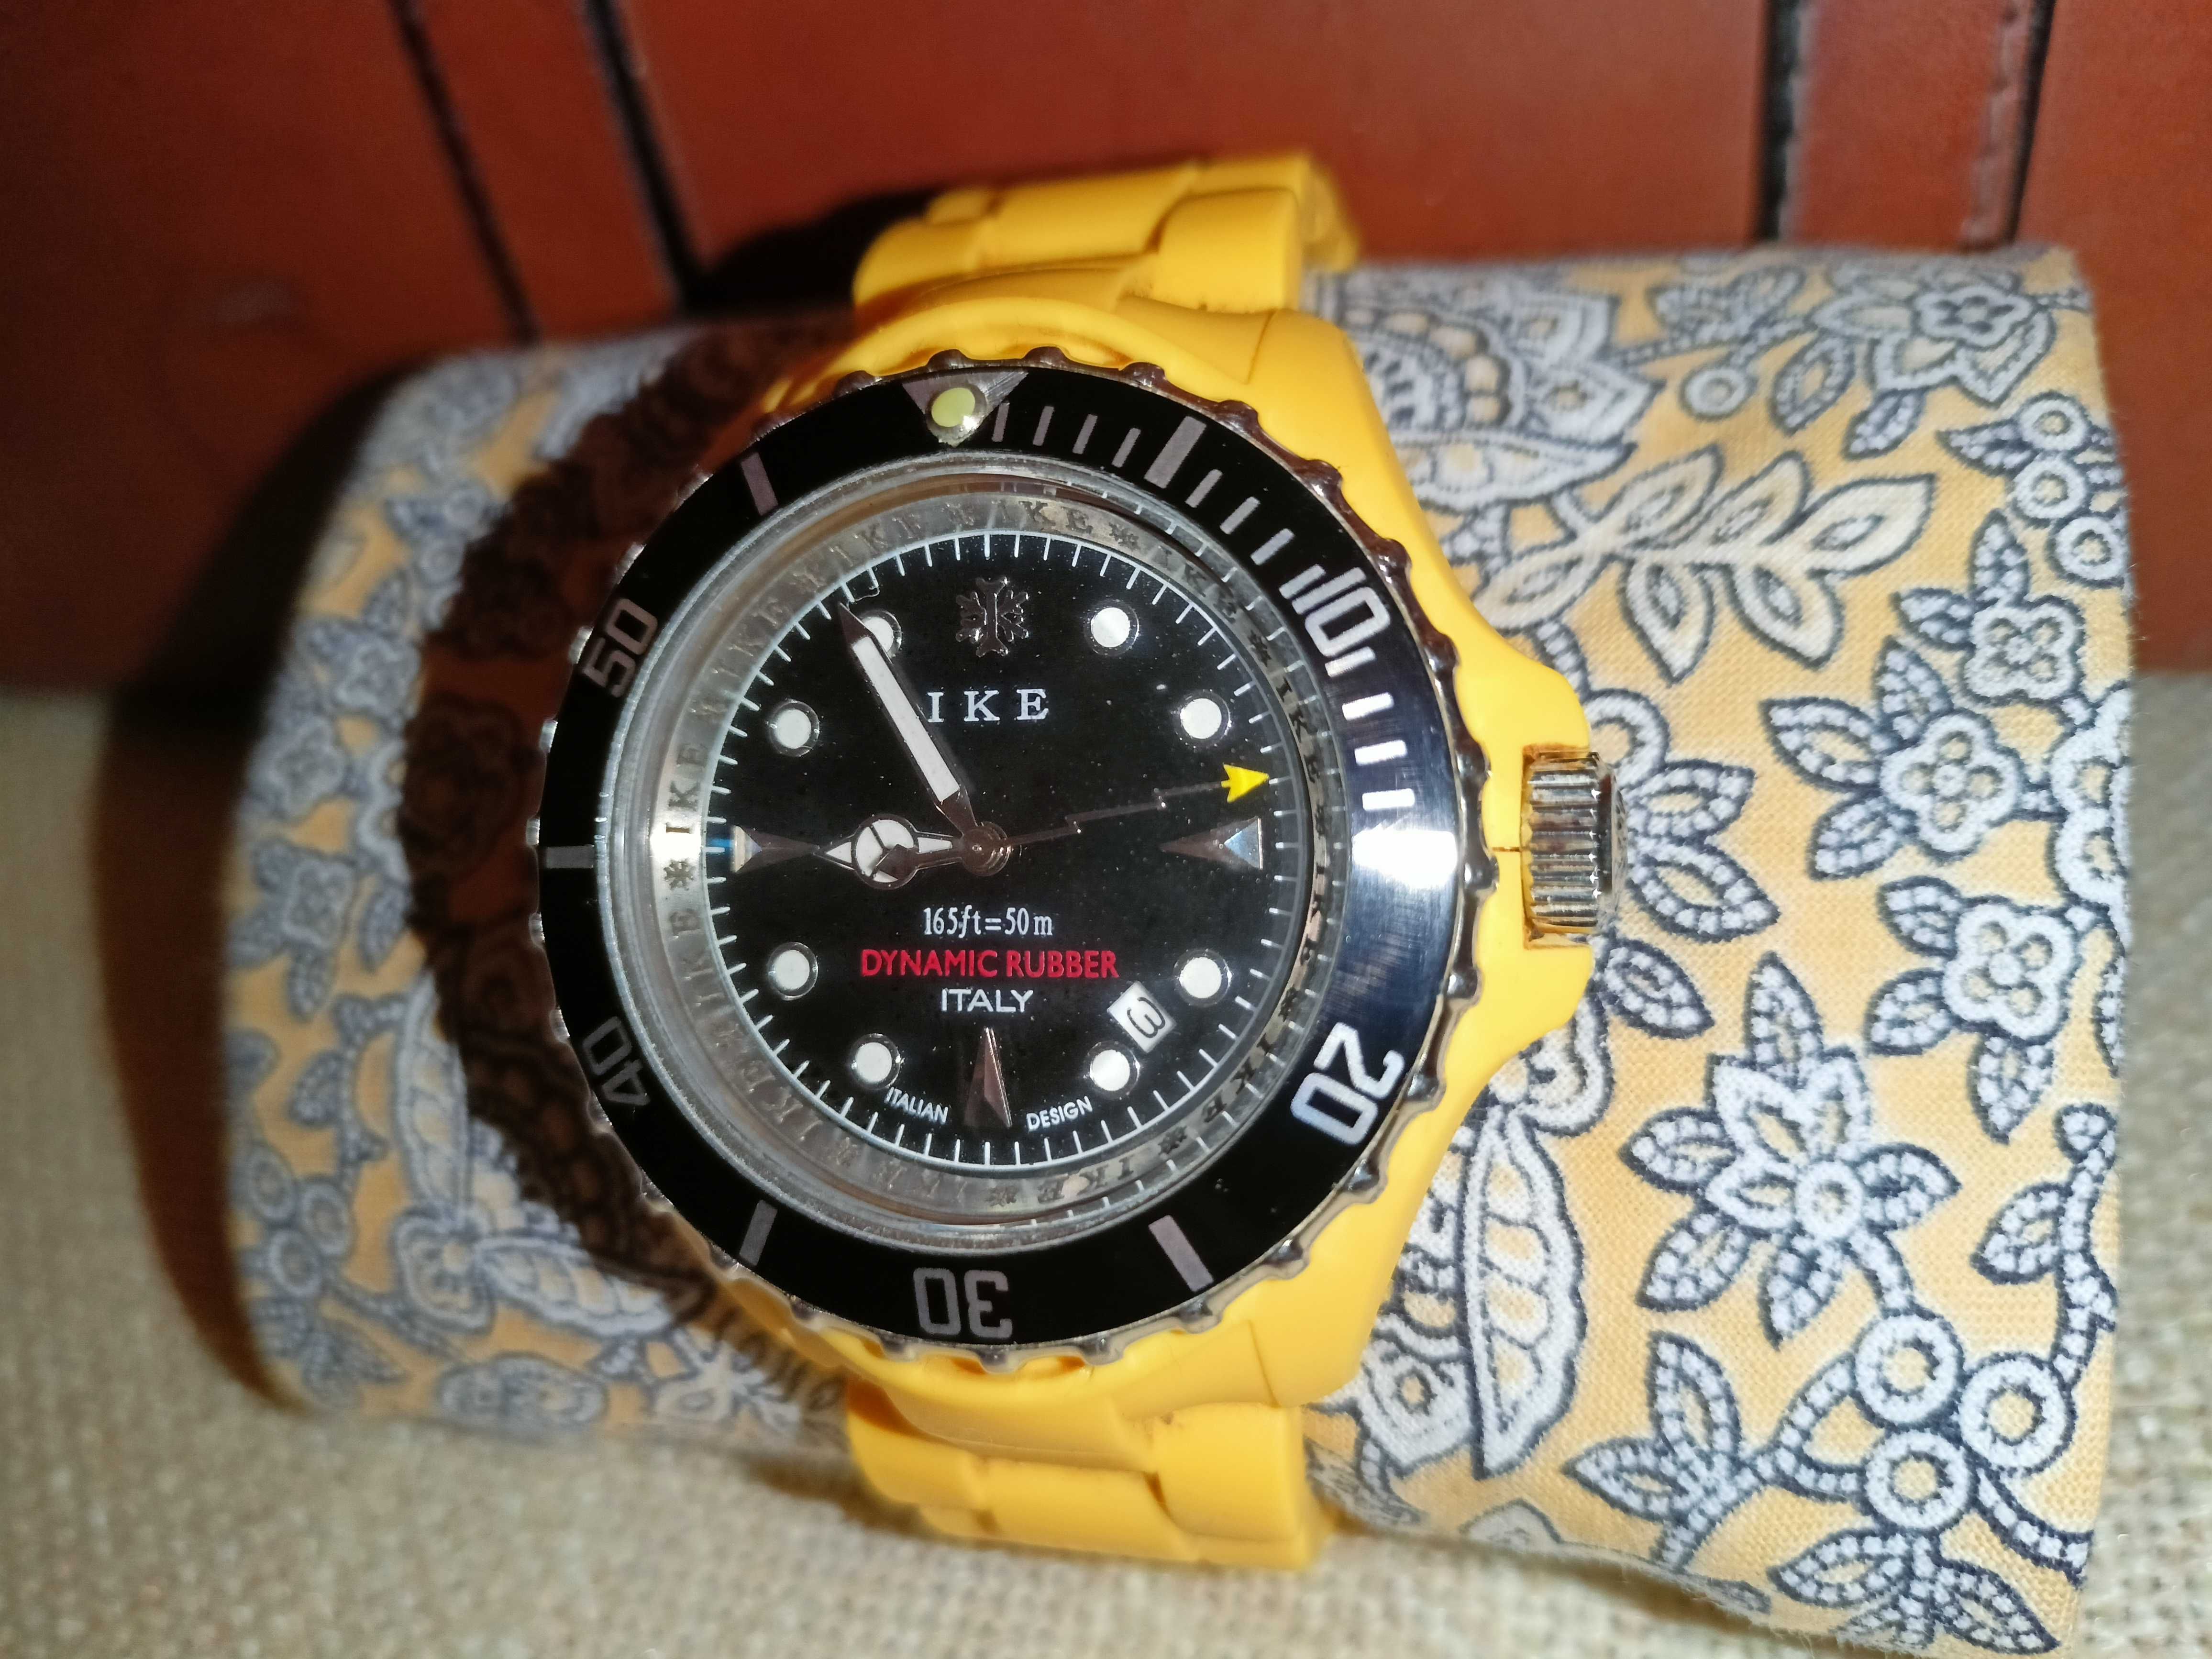 Żółty gumowy zegarek męski Ike